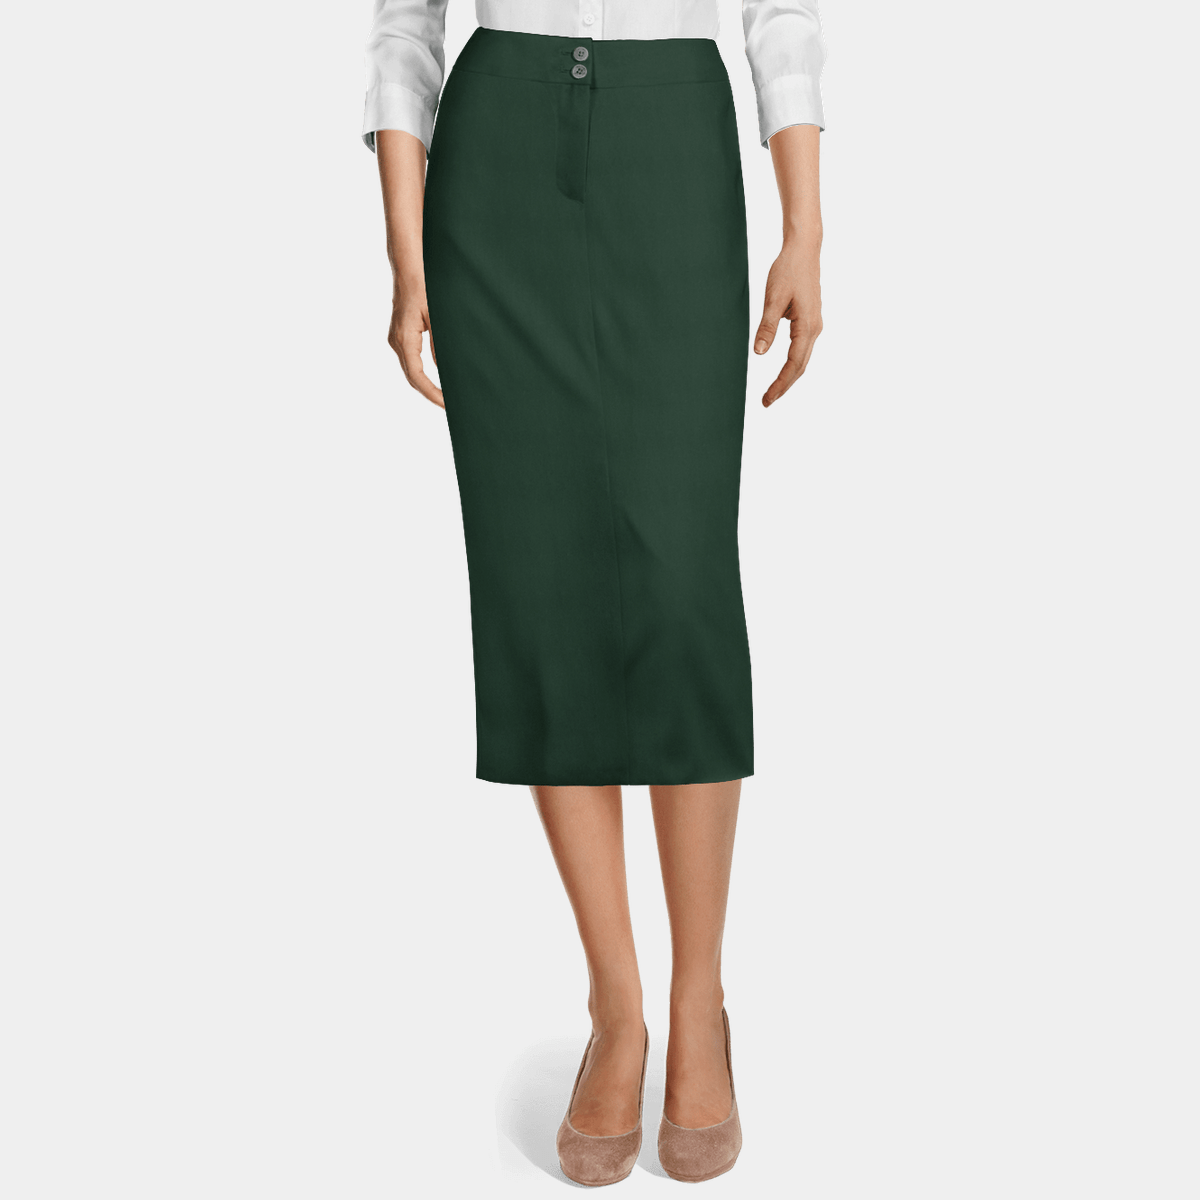 high waisted green pencil skirt